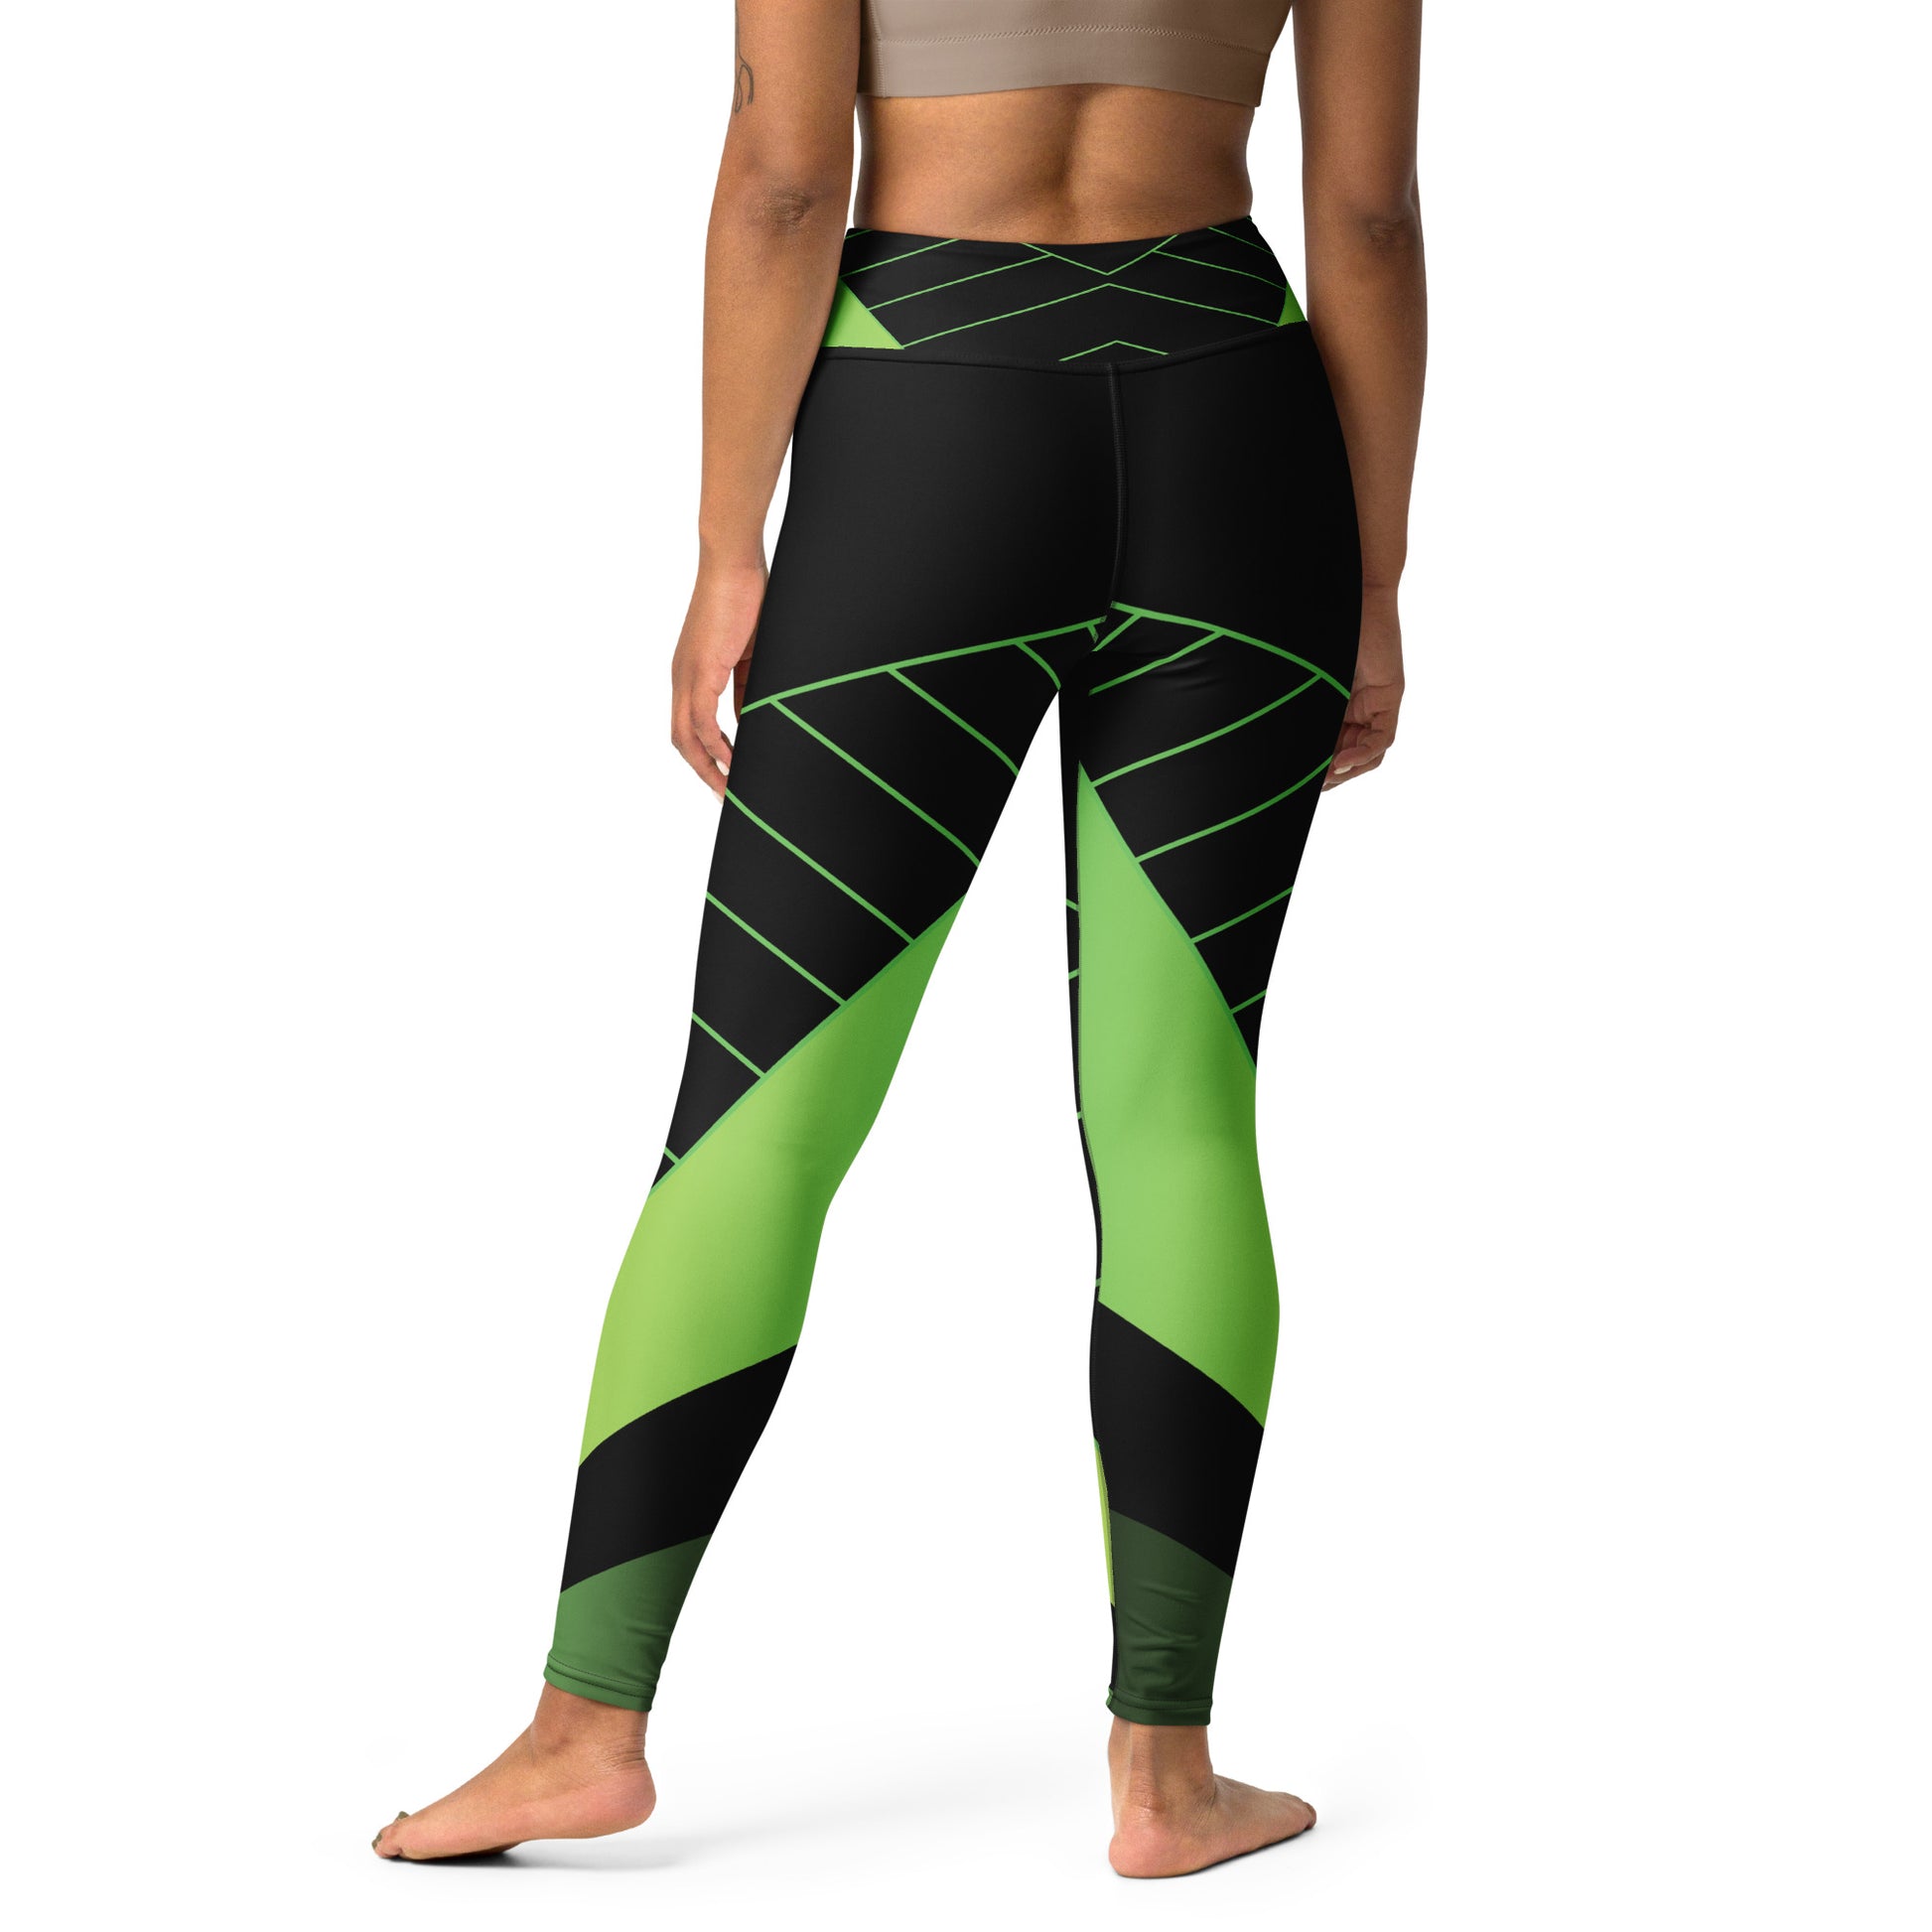 Laser Green Yoga Leggings - Another Bodega